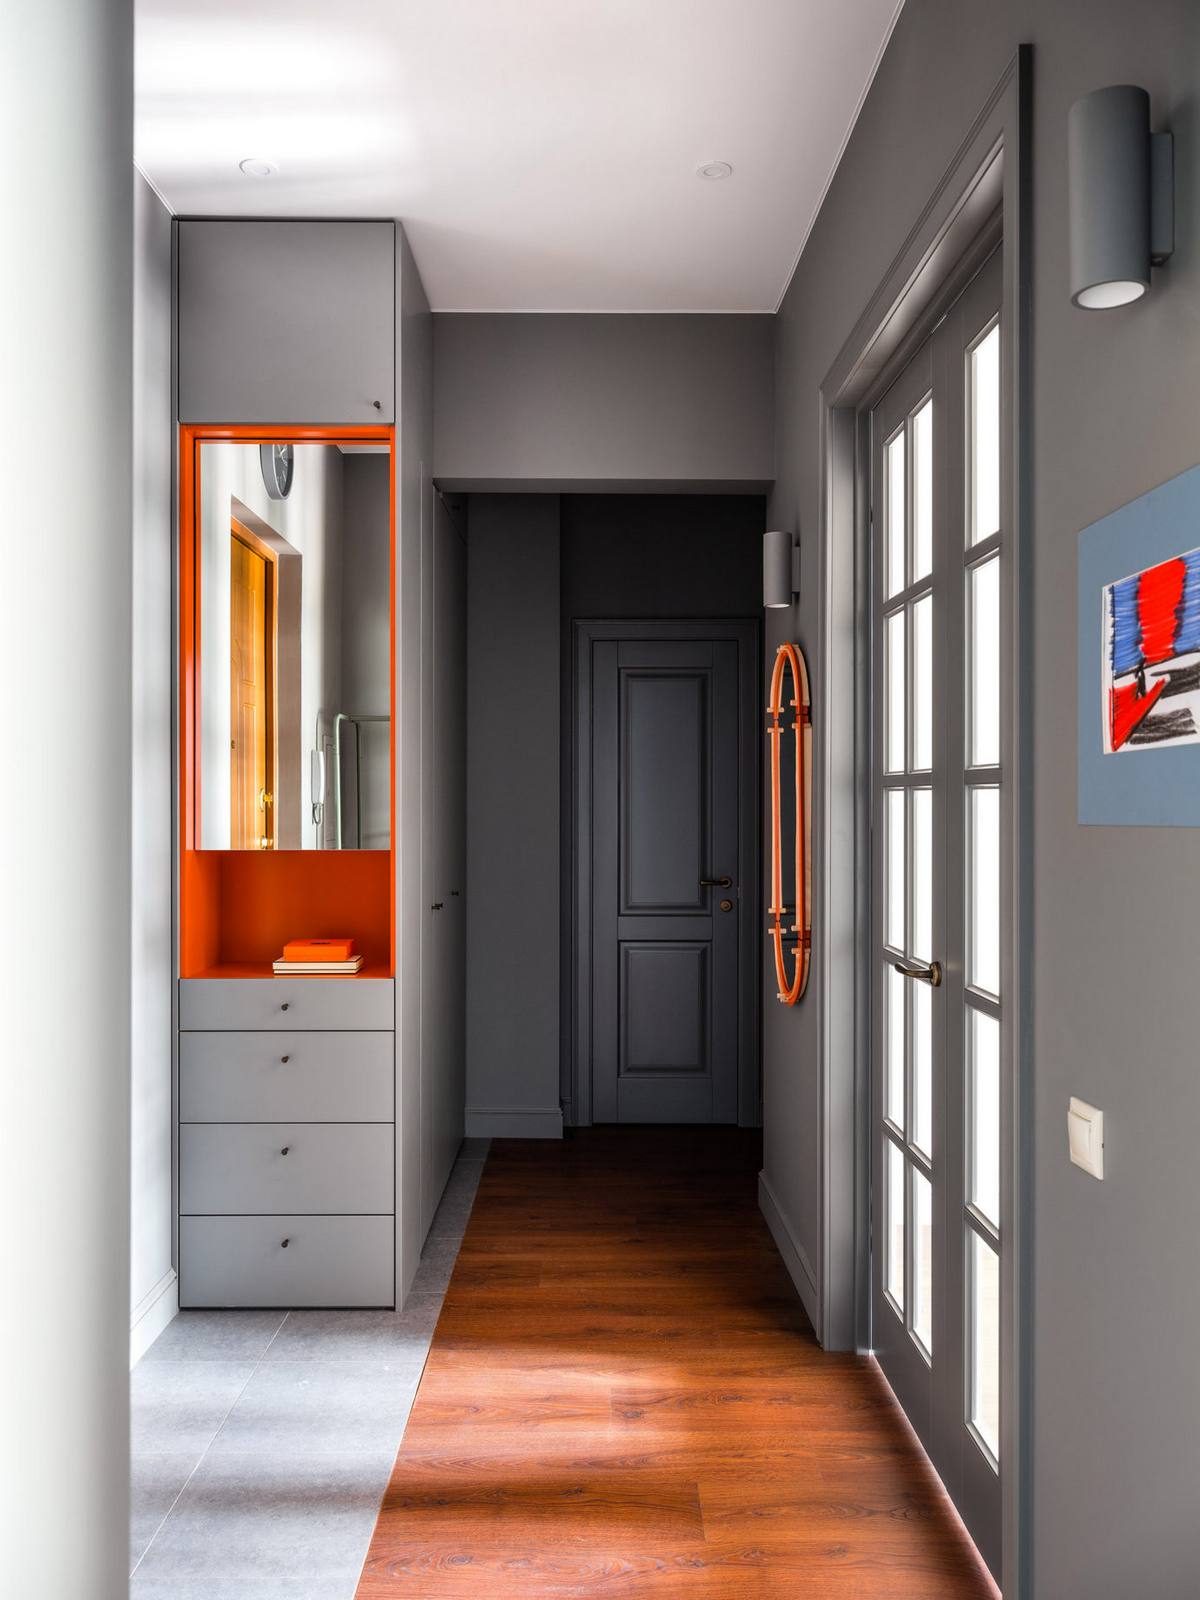 Lối vào căn hộ được thiết kế đơn giản nhưng sang trọng với sơn tường màu xám đậm, kết hợp tủ lưu trữ ốp gương với hộc tủ màu cam bắt mắt, góc phải còn có tấm gương hình oval với viền khung đồng sắc ấn tượng.